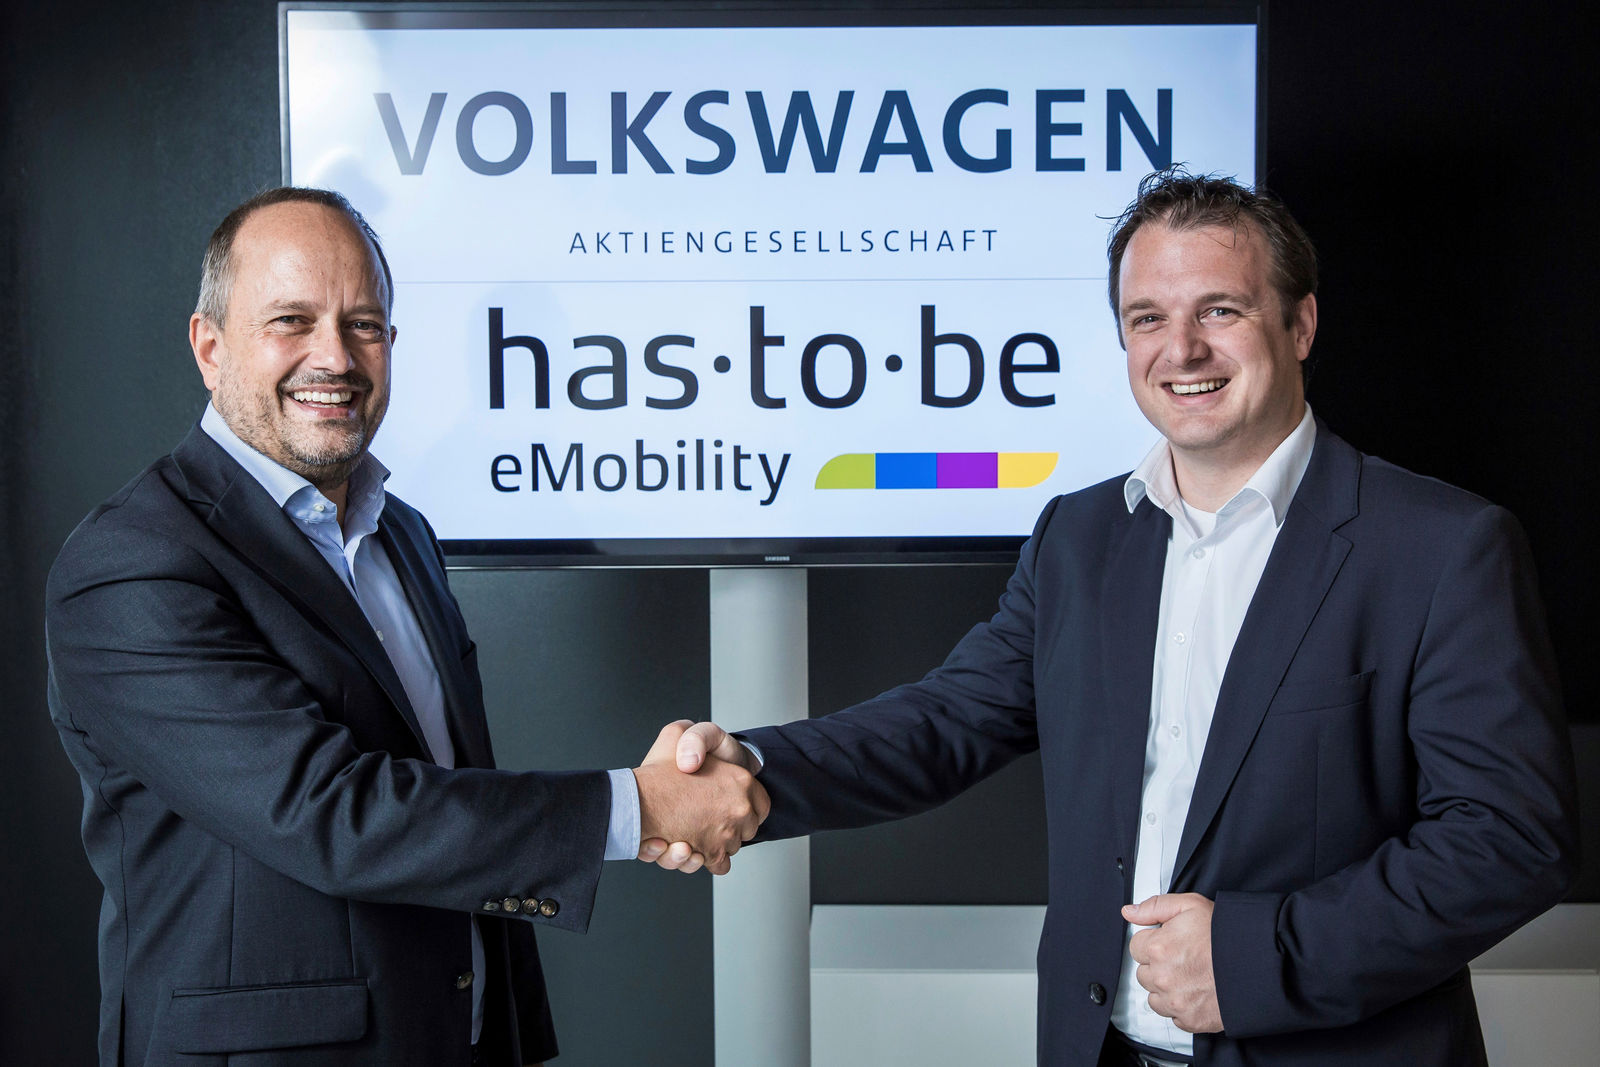 Volkswagen und Softwareexperte has·to·be  kooperieren beim Ausbau der Ladeinfrastruktur